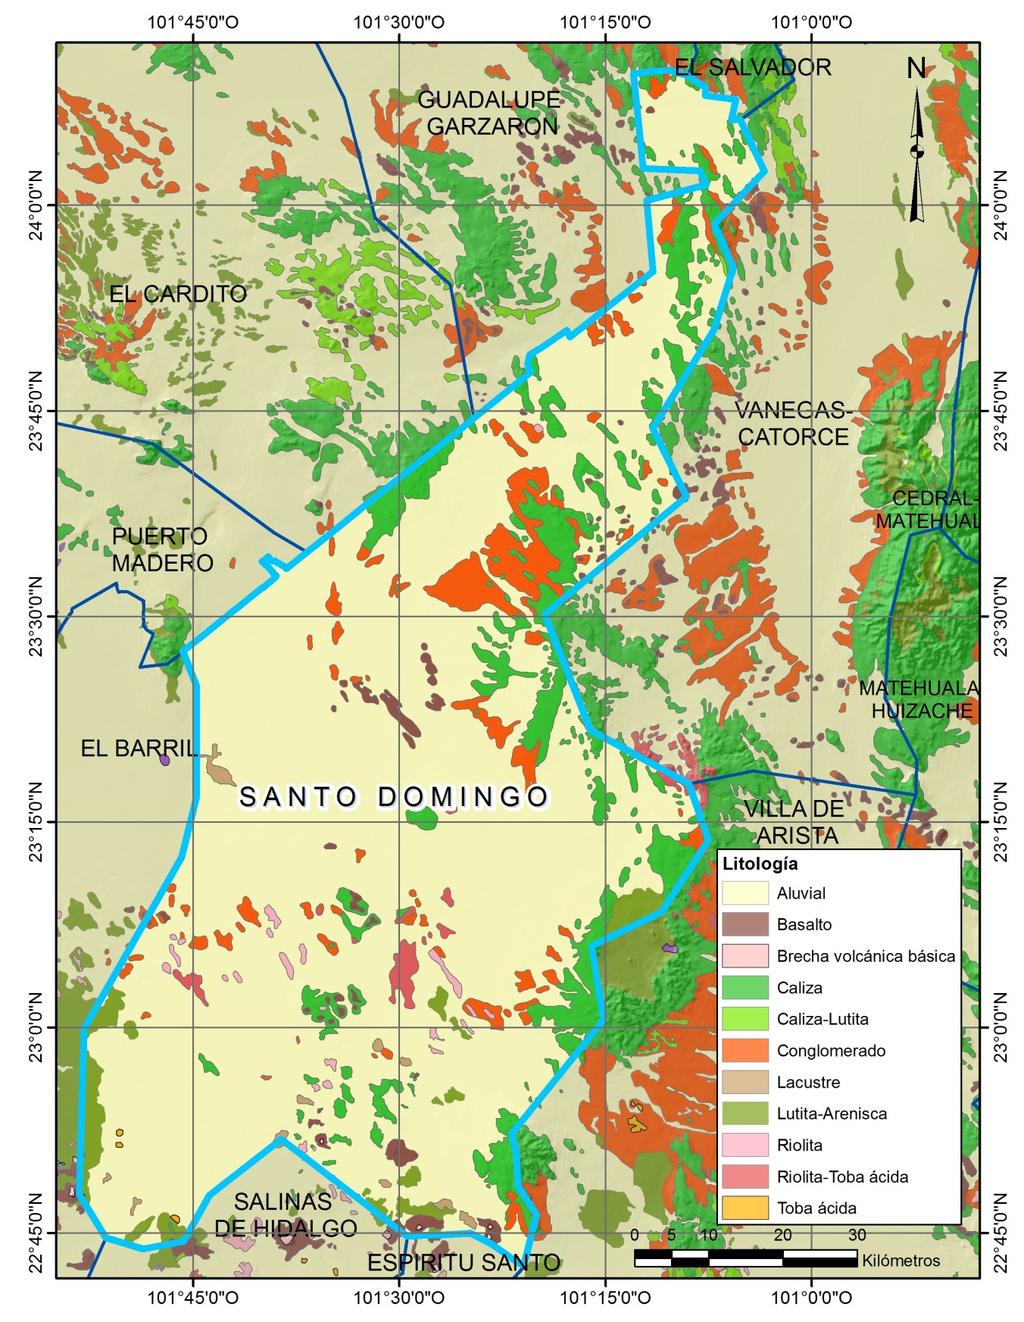 Geología La zona está conformada en un 80% por material aluvial.